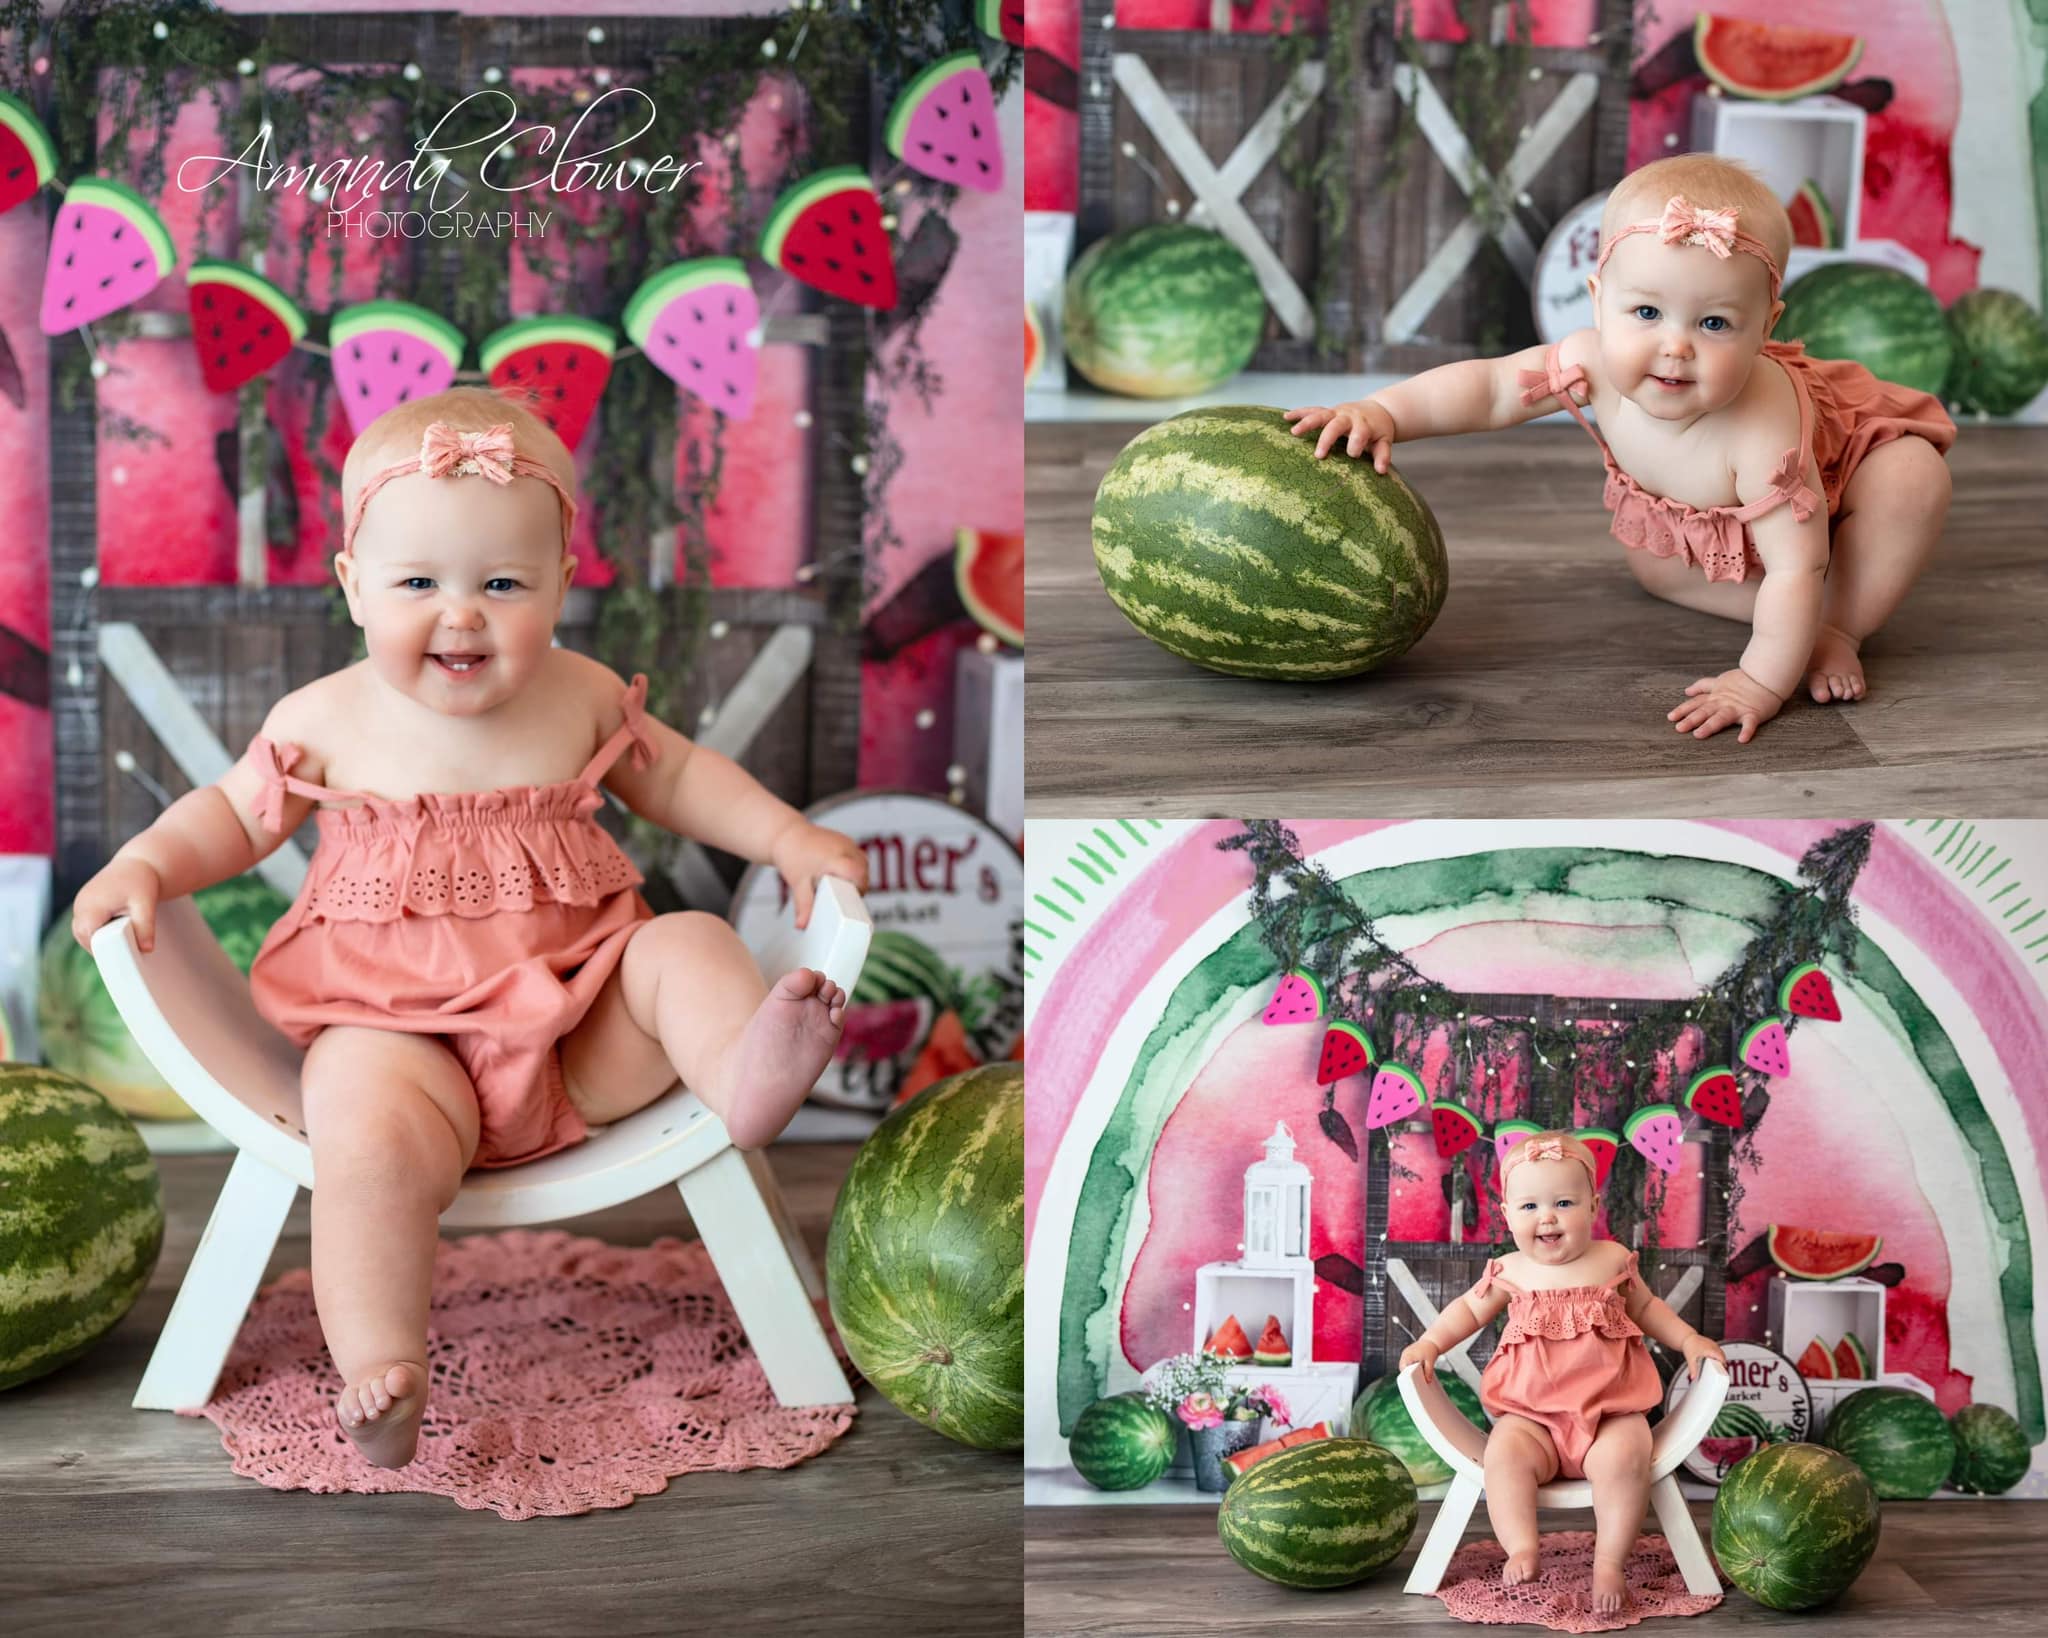 Kate Wassermelonen Geburtstag Hintergrund von Mandy Ringe Photography